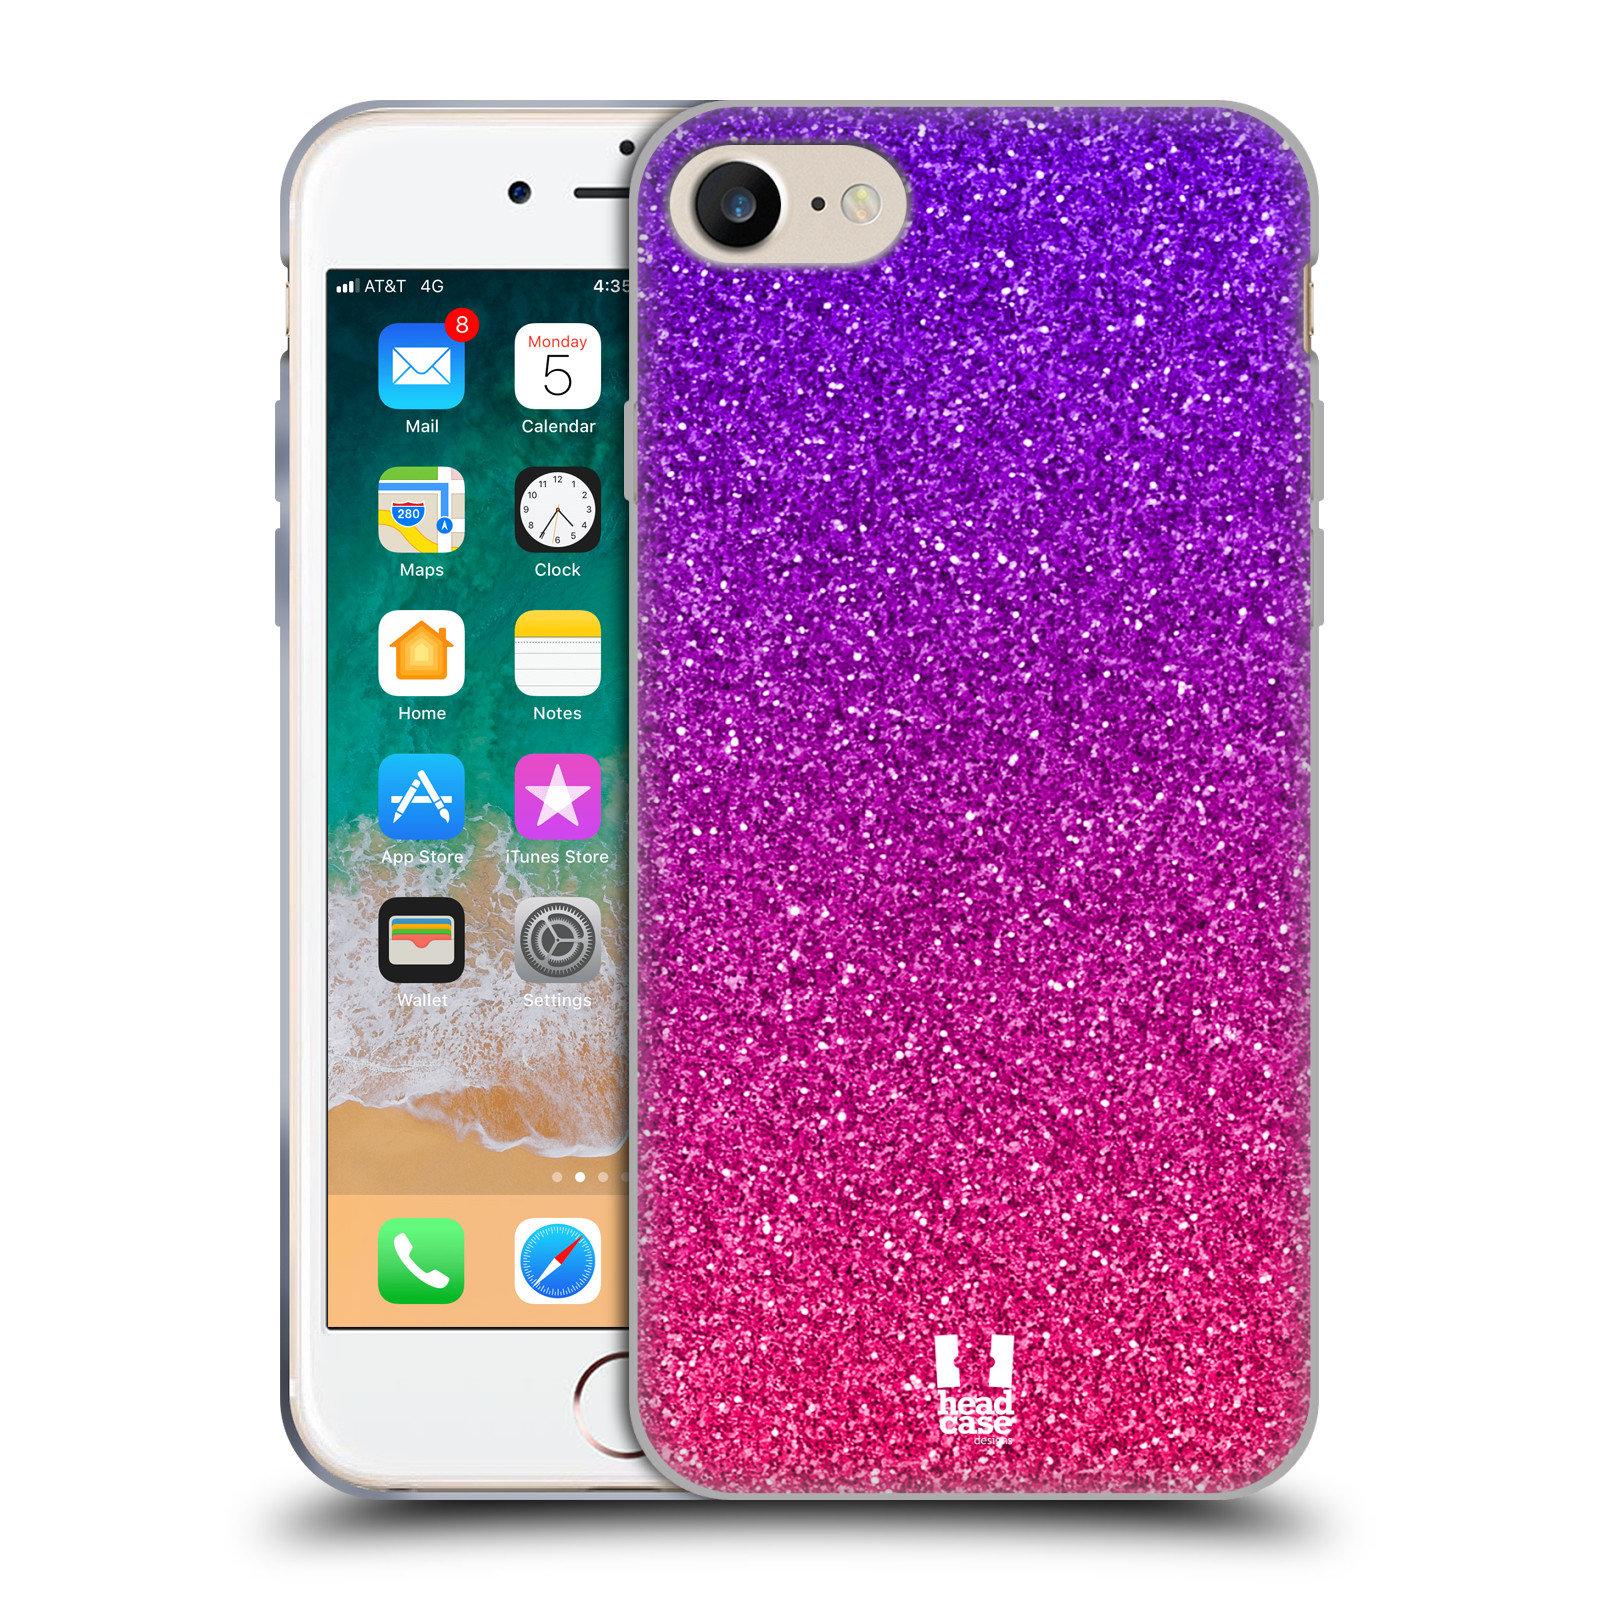 Silikonové pouzdro na mobil Apple iPhone SE 2022 / SE 2020 - Head Case - Mix Pink (Silikonový kryt, obal, pouzdro na mobilní telefon Apple iPhone SE 2020 / Apple iPhone SE 2022 s motivem Mix Pink)